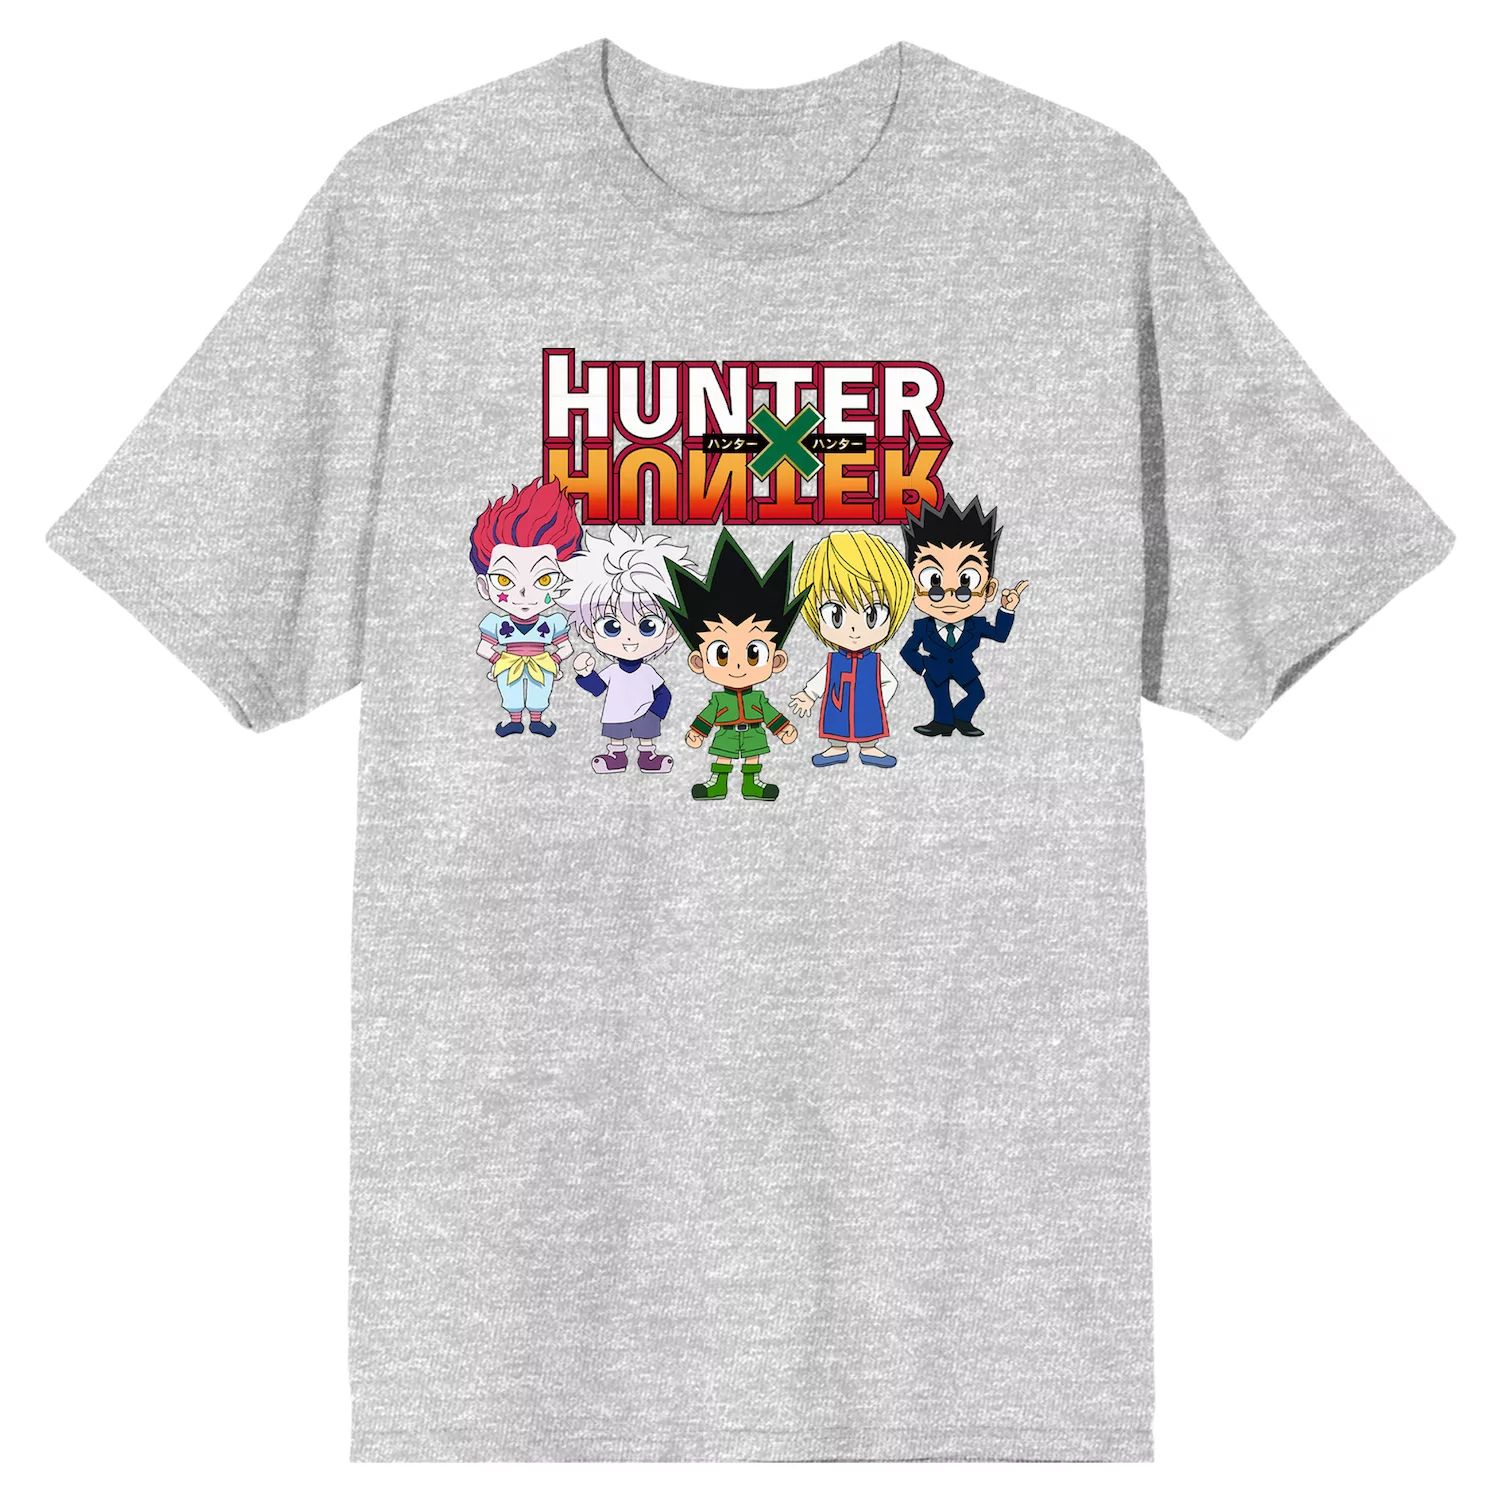 Мужская футболка Hunter X Hunter в стиле аниме Licensed Character толстовка мужская оверсайз с капюшоном винтажная повседневная уличная одежда с принтом японского аниме hunter x hunter hisoka свитшот в стиле манга